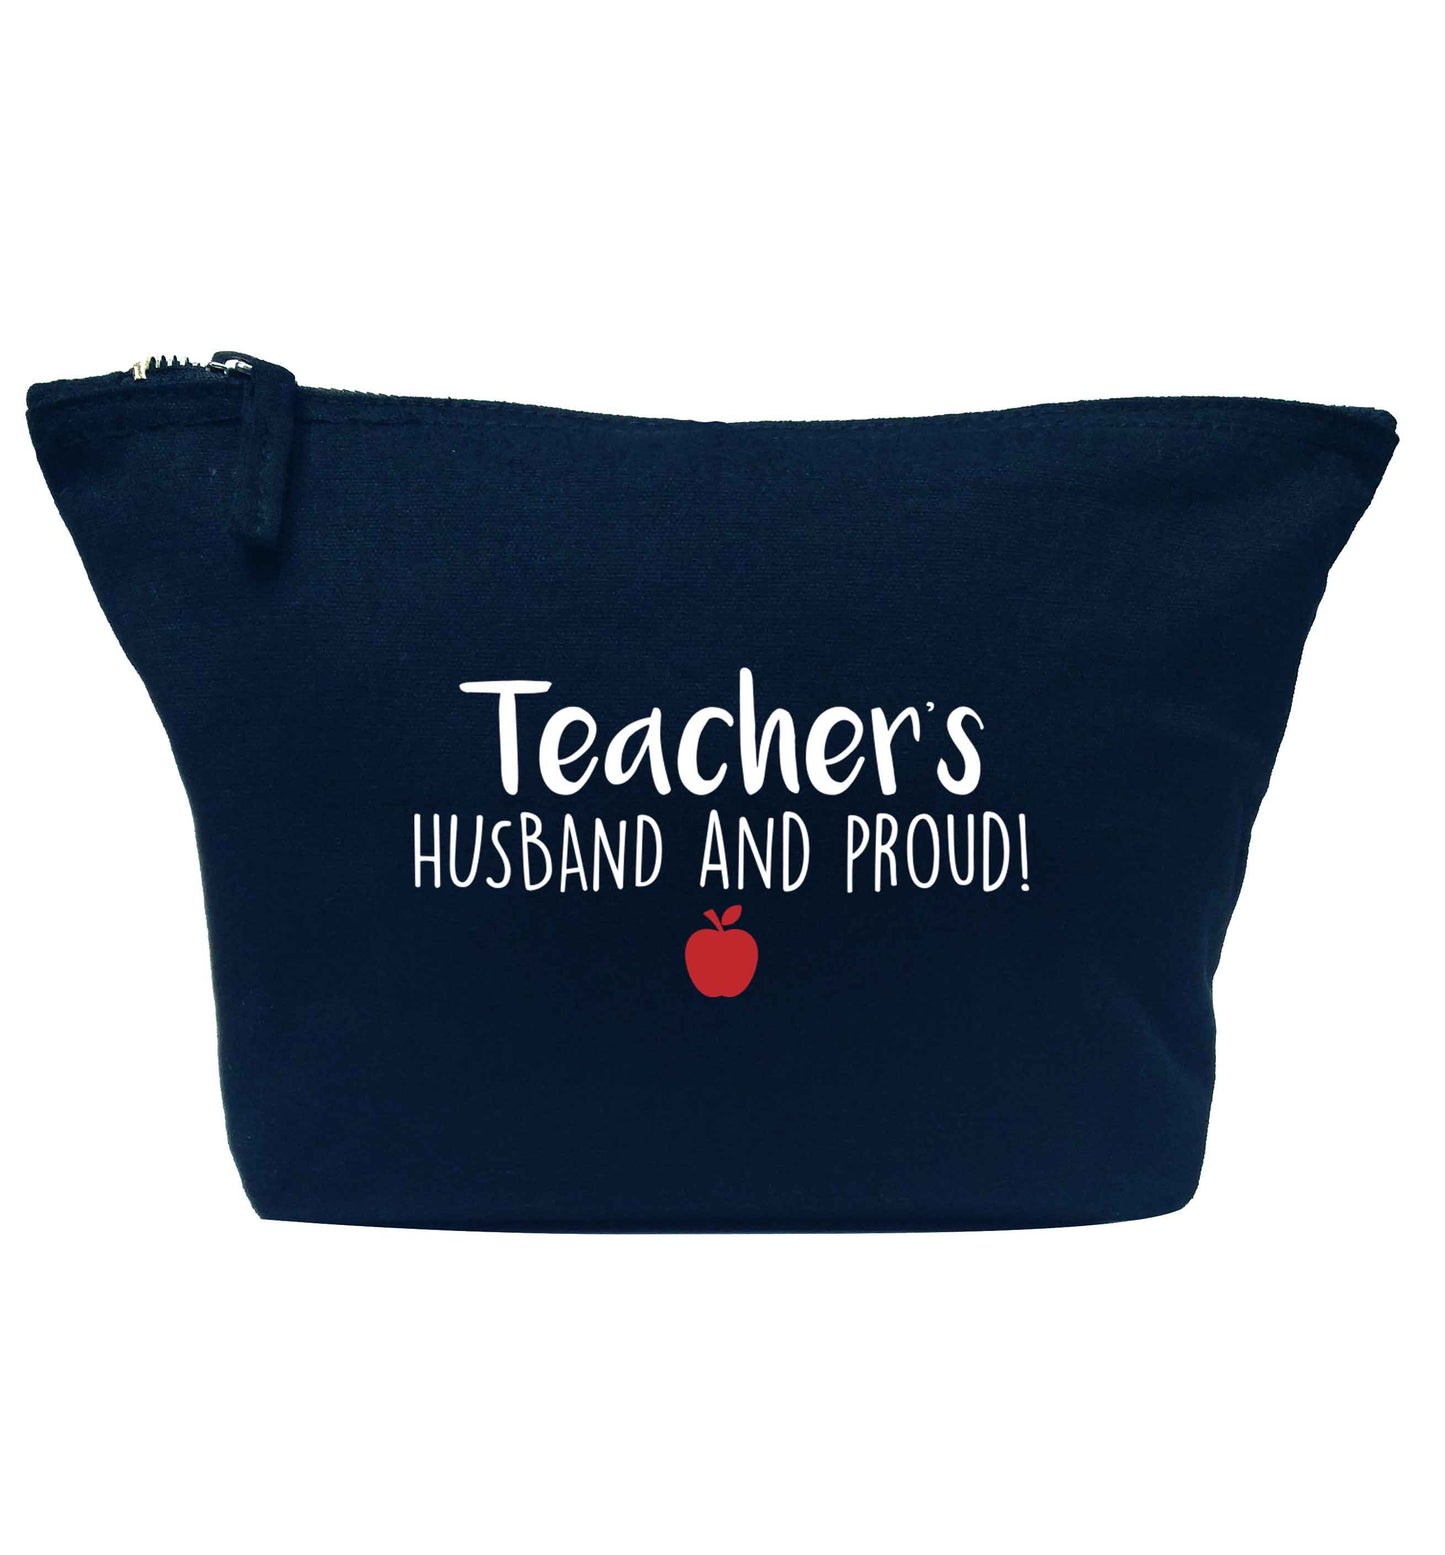 Teachers husband and proud navy makeup bag